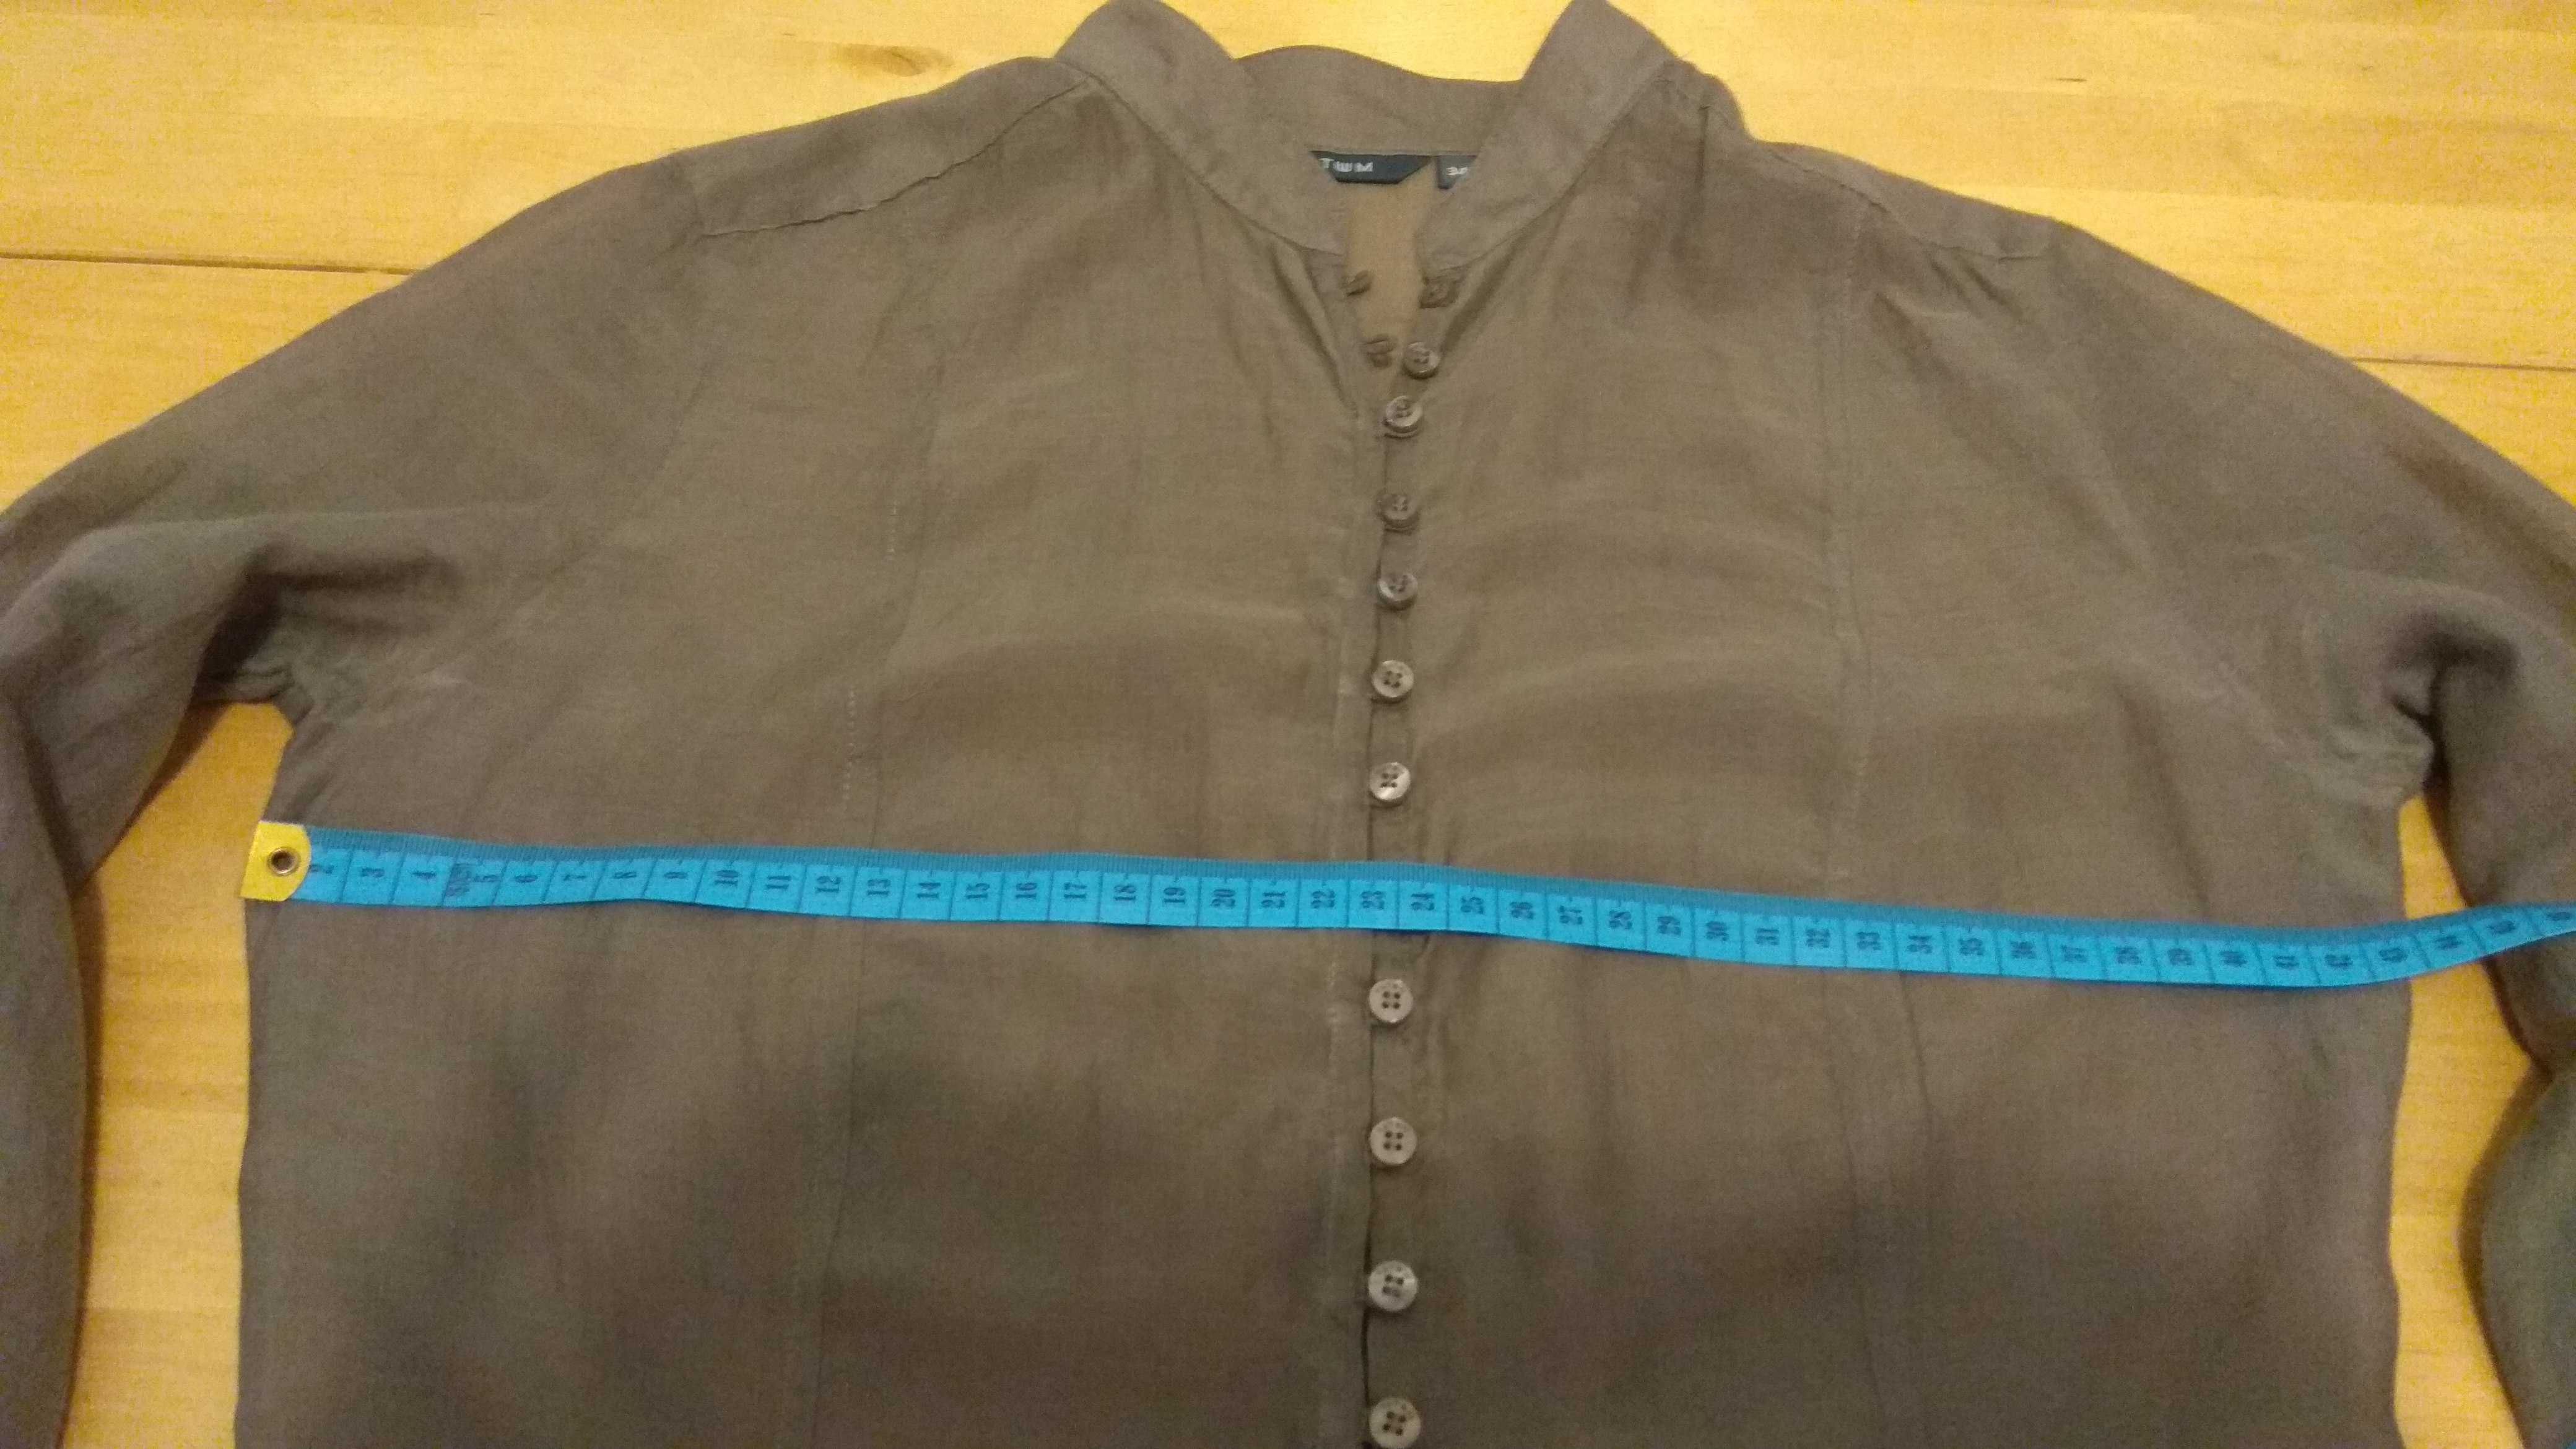 Bluzka damska Tatuum XS (rozmiar 34), jedwabno bawełniana